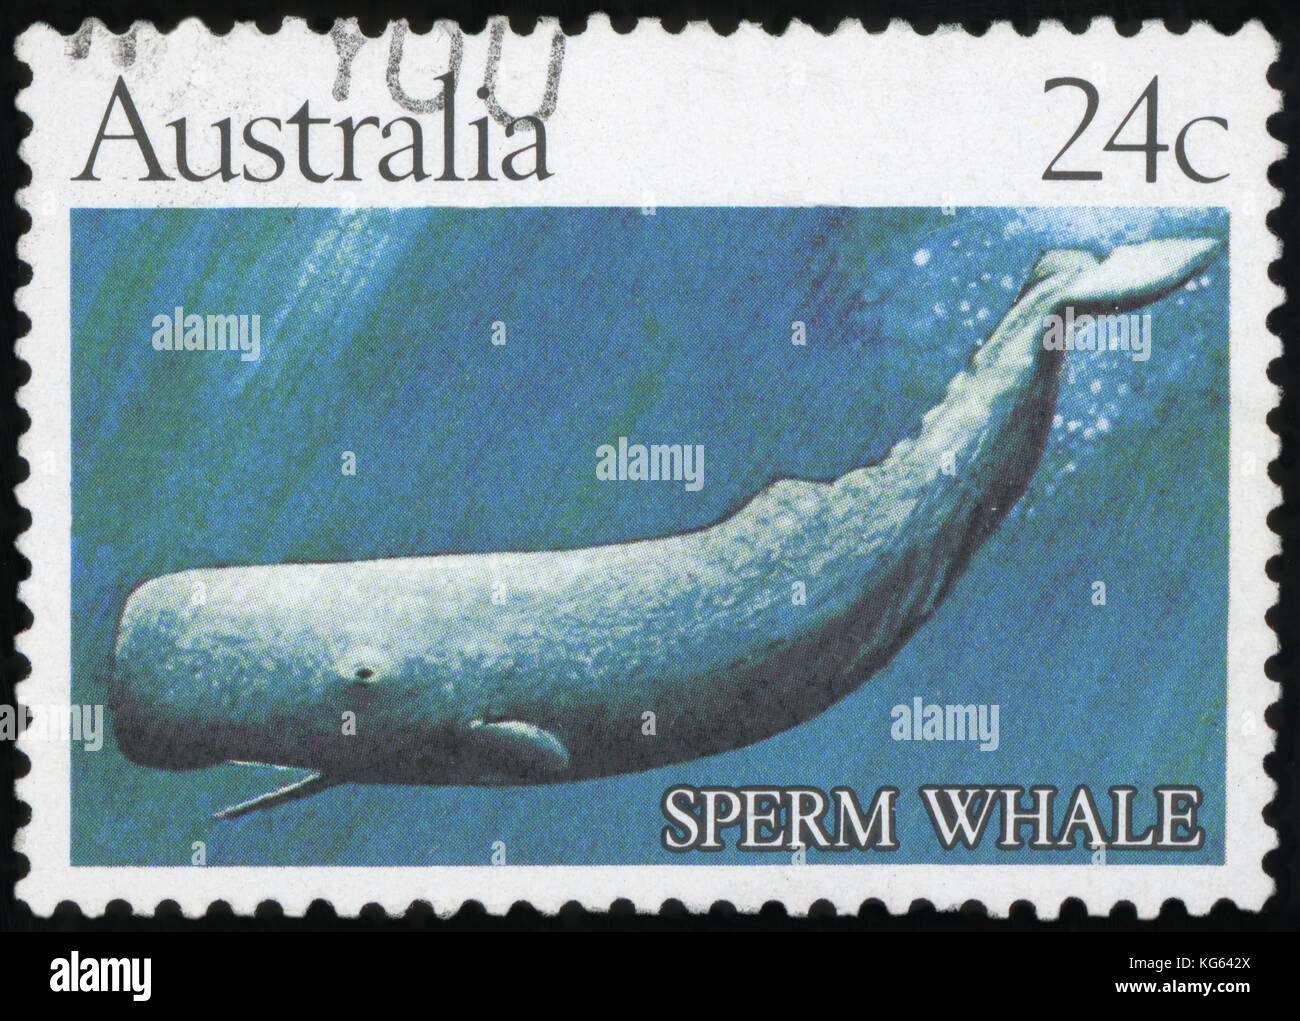 Australie - VERS 1982 : timbres en Australie montre cachalot, vers 1982 Banque D'Images